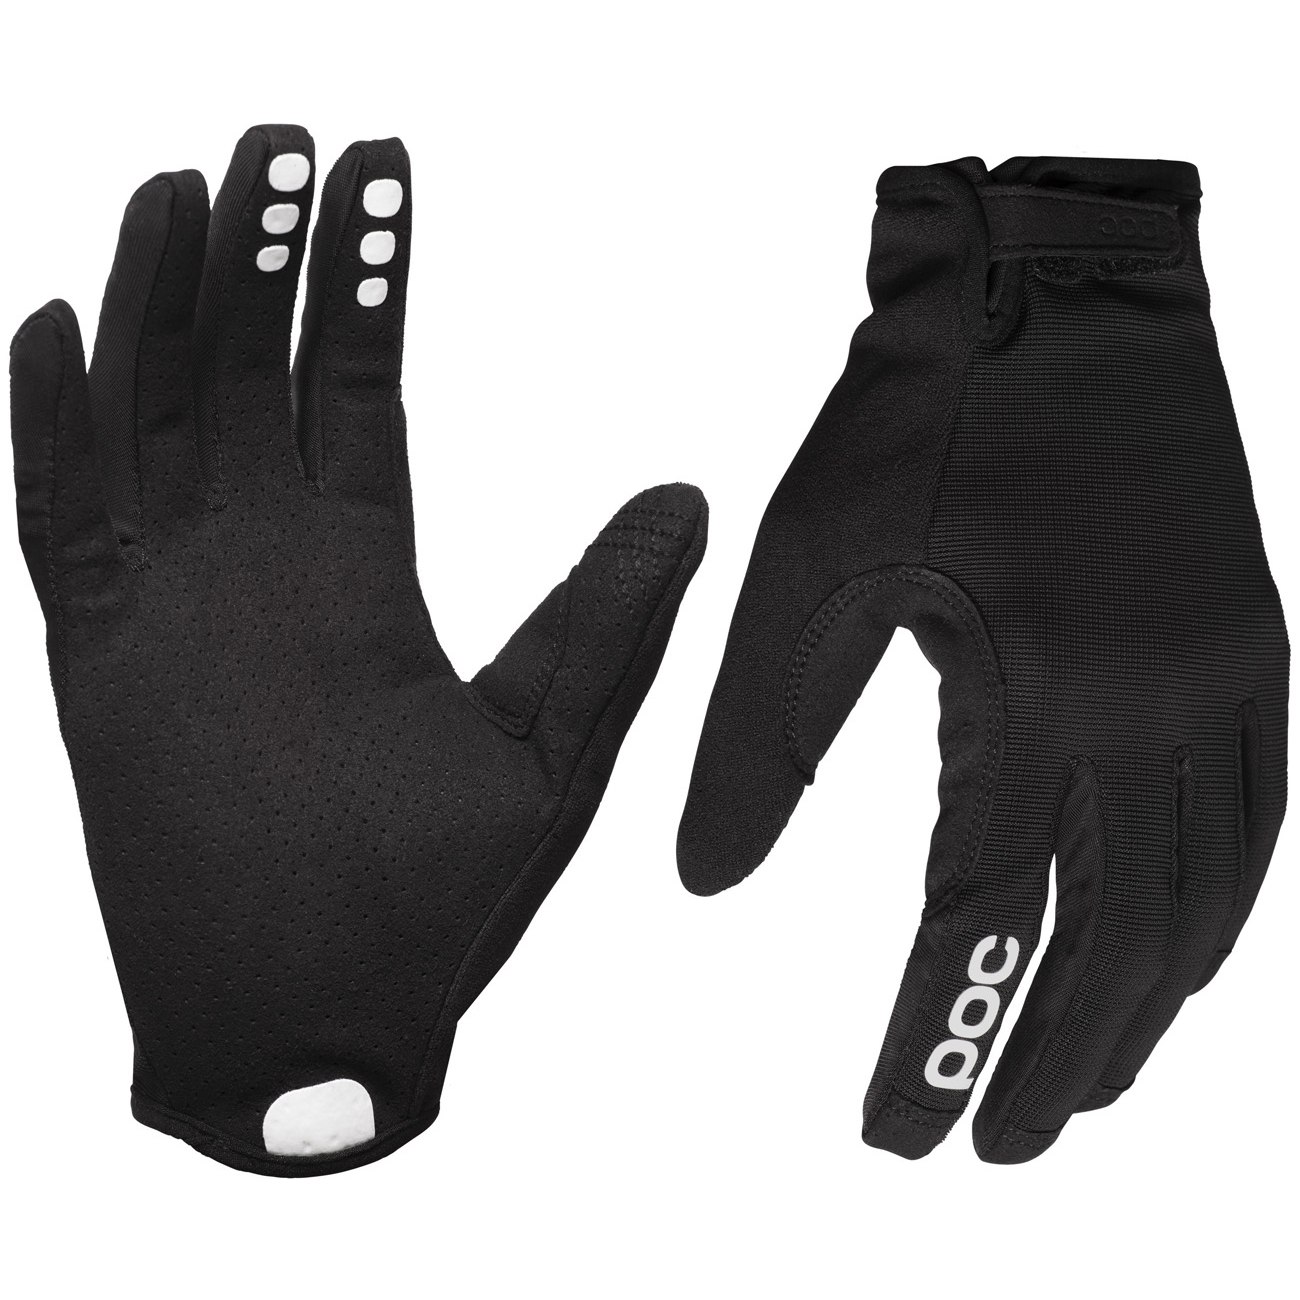 Produktbild von POC Resistance Enduro Adjustable Handschuhe - 8204 Uranium black/Uranium Black